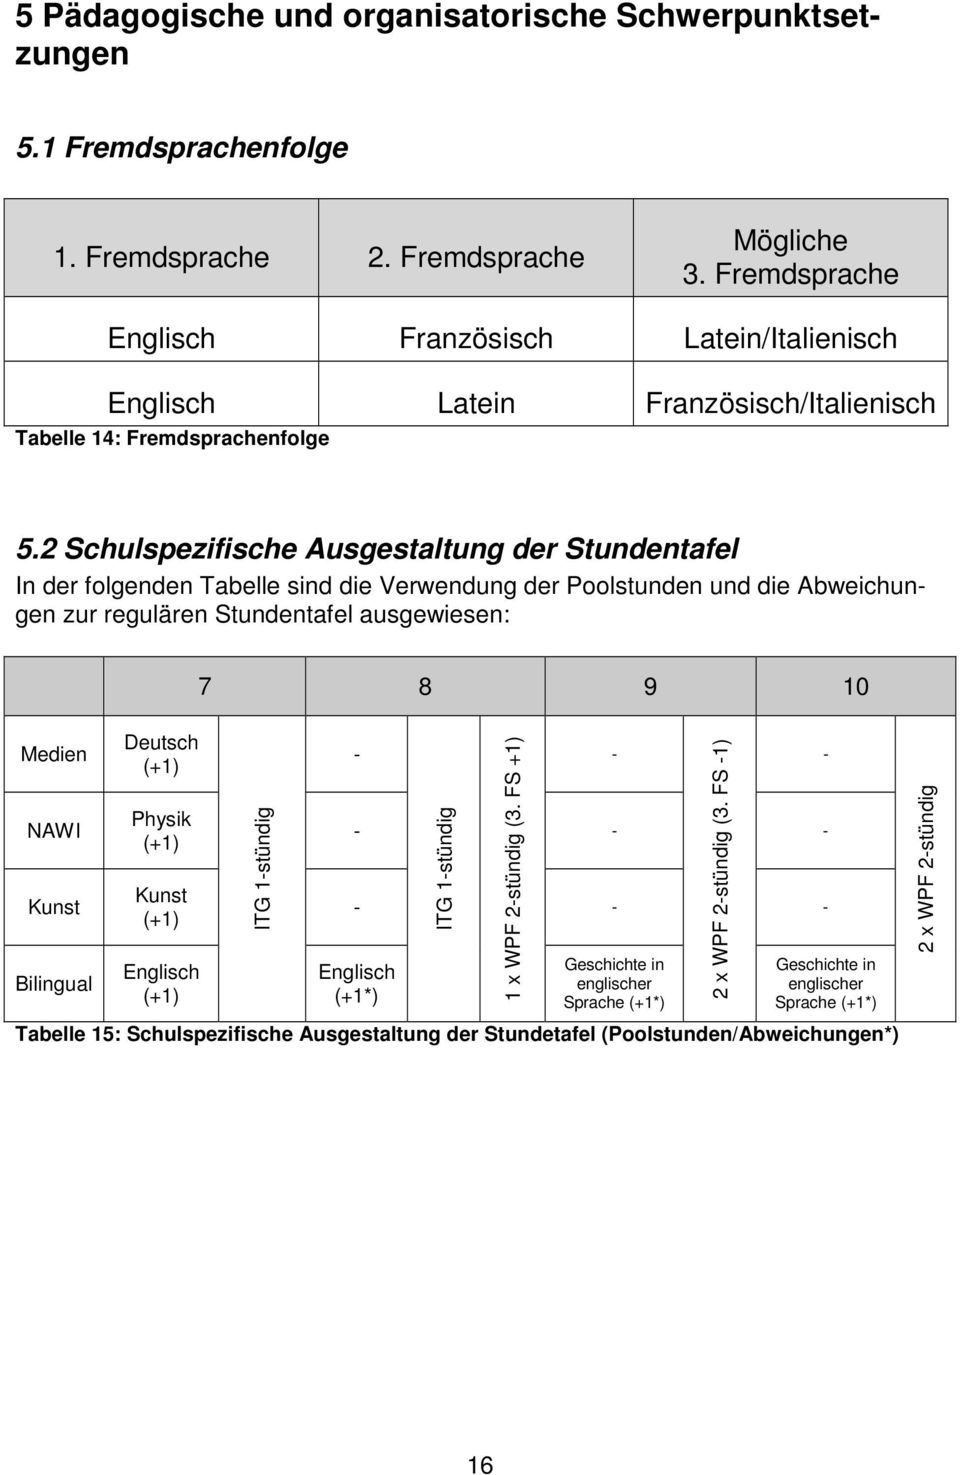 2 Schulspezifische usgestaltung der Stundentafel In der folgenden Tabelle sind die Verwendung der Poolstunden und die bweichungen zur regulären Stundentafel ausgewiesen: Medien NWI Kunst Bilingual